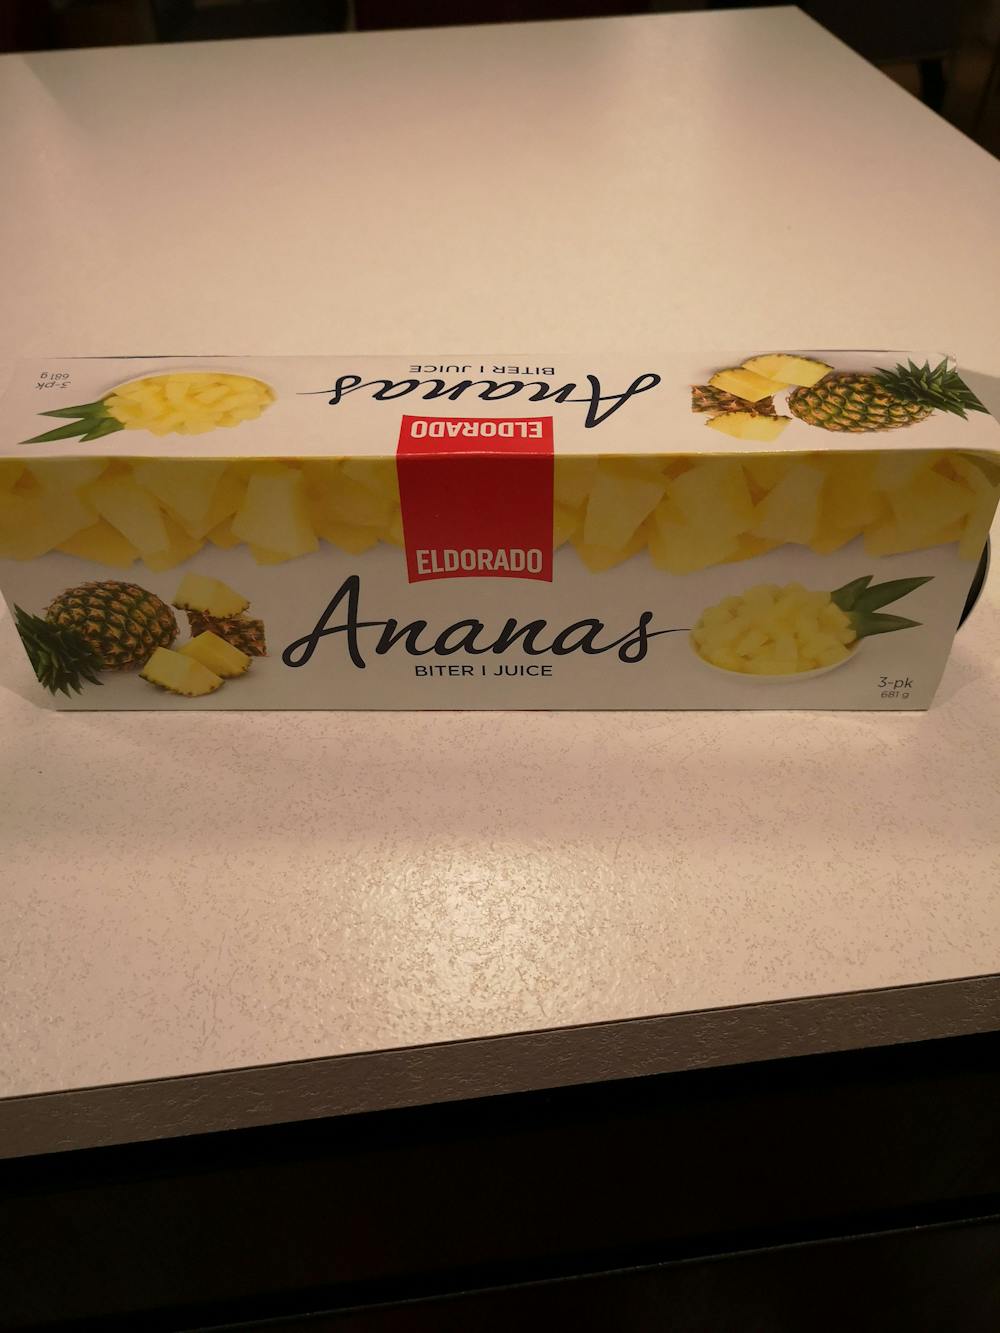 Ananas, biter i juice, Eldorado